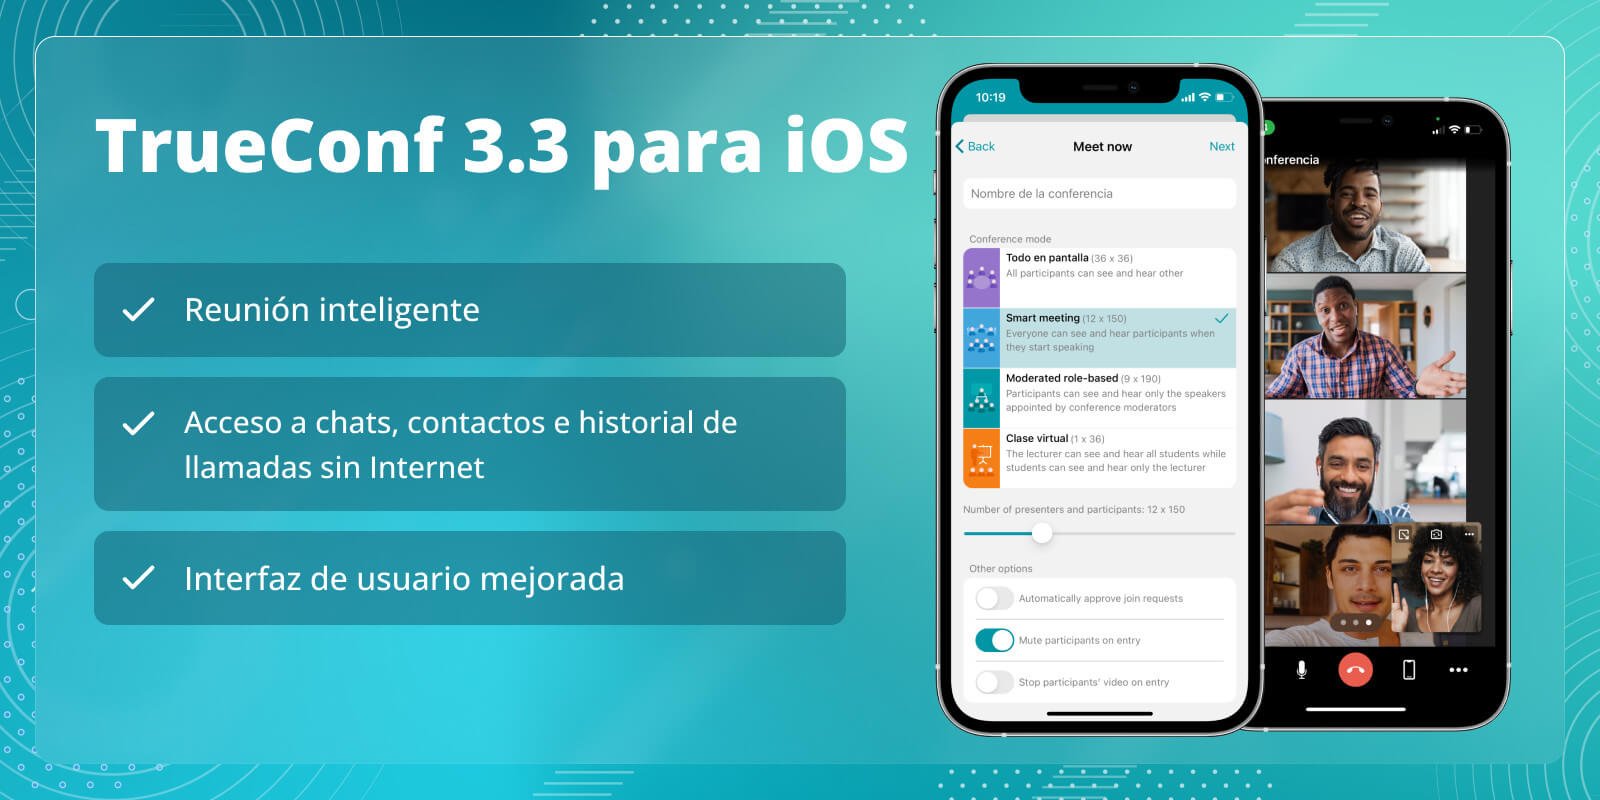 TrueConf 3.3 para iOS: nueva interfaz de usuario, modo de reunión inteligente, acceso sin conexión a chats, contactos e historial de llamadas 3